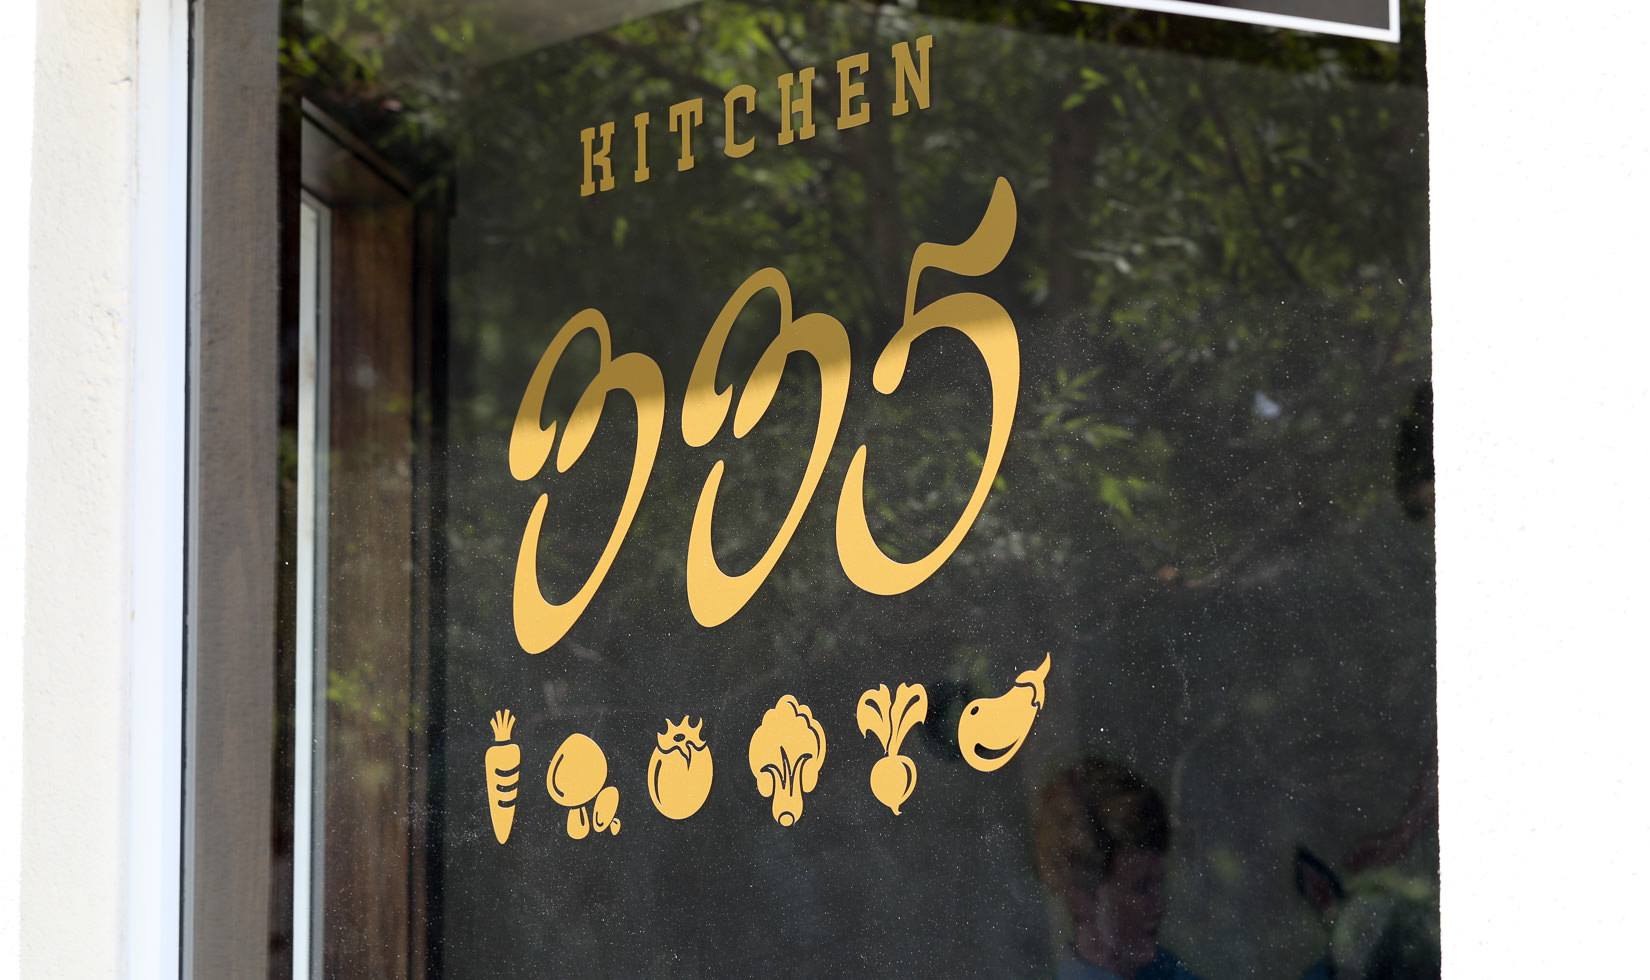 Kitchen 335, new downtown Healdsburg restaurants (formerly Persimmon)